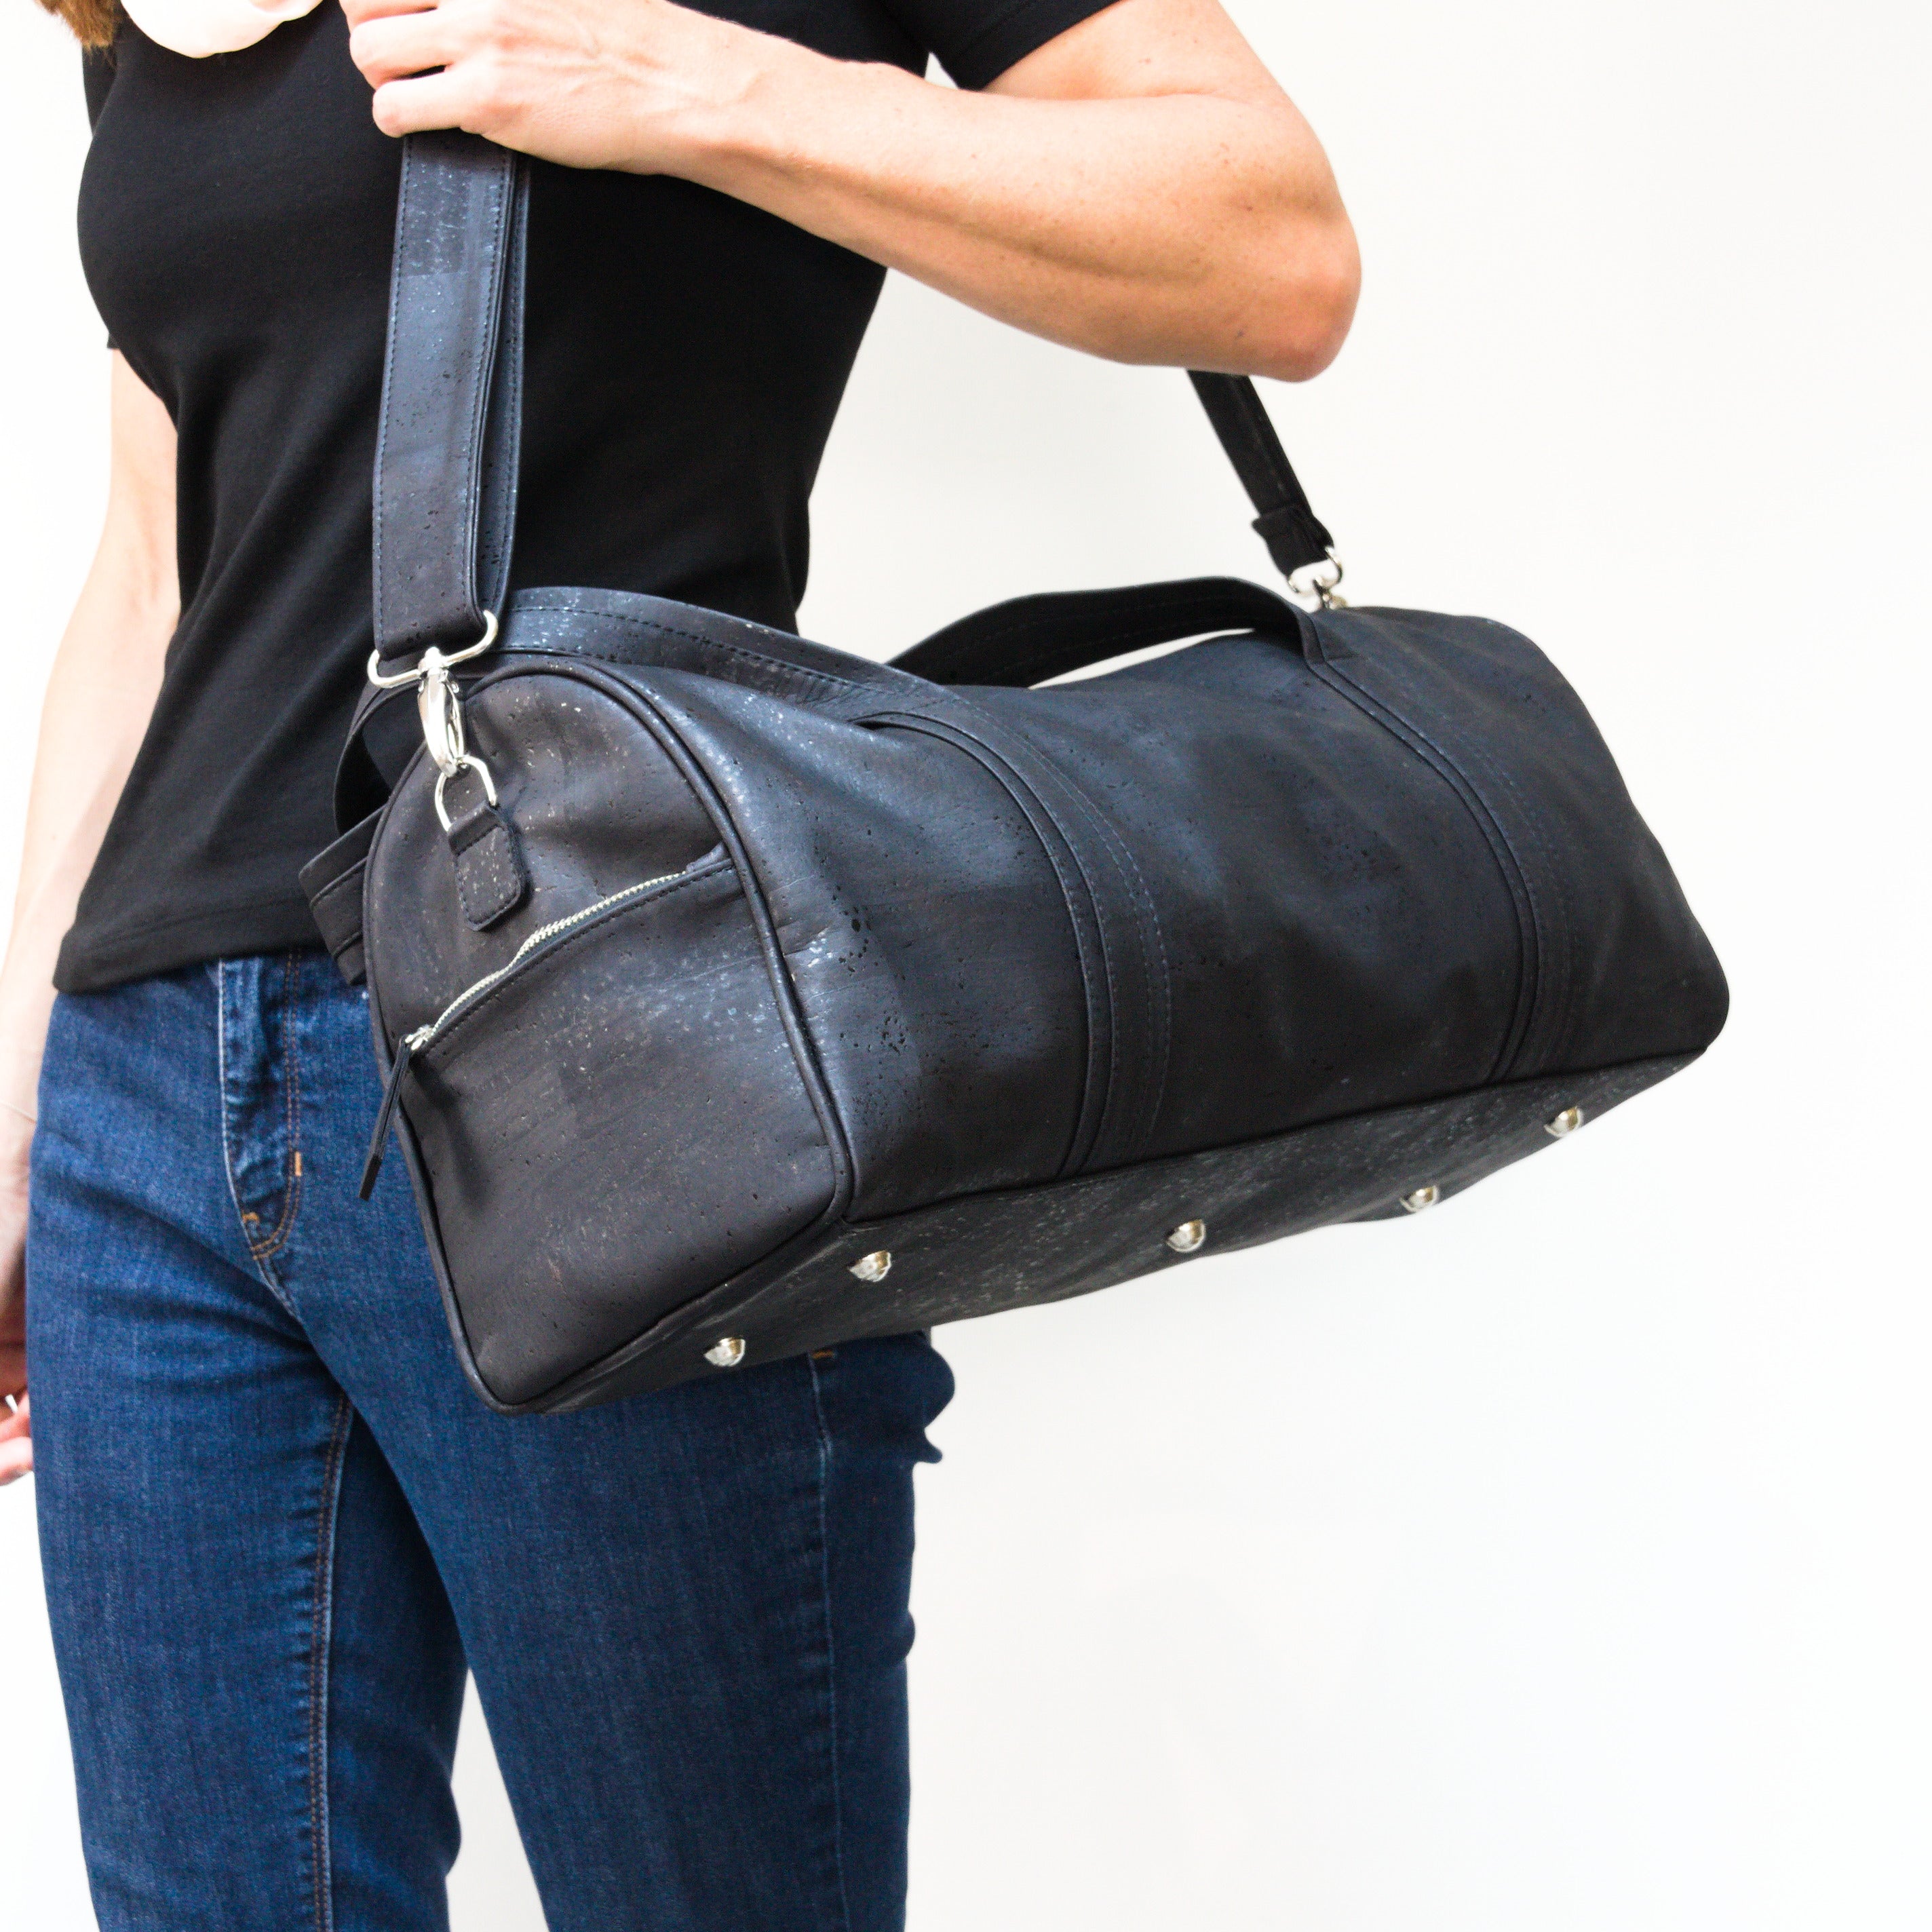 Kork Sporttasche für Männer und Frauen * in 2 Farben * vegan * abwaschbar * antiseptisch * sehr leicht * handgefertigtes Sportbag